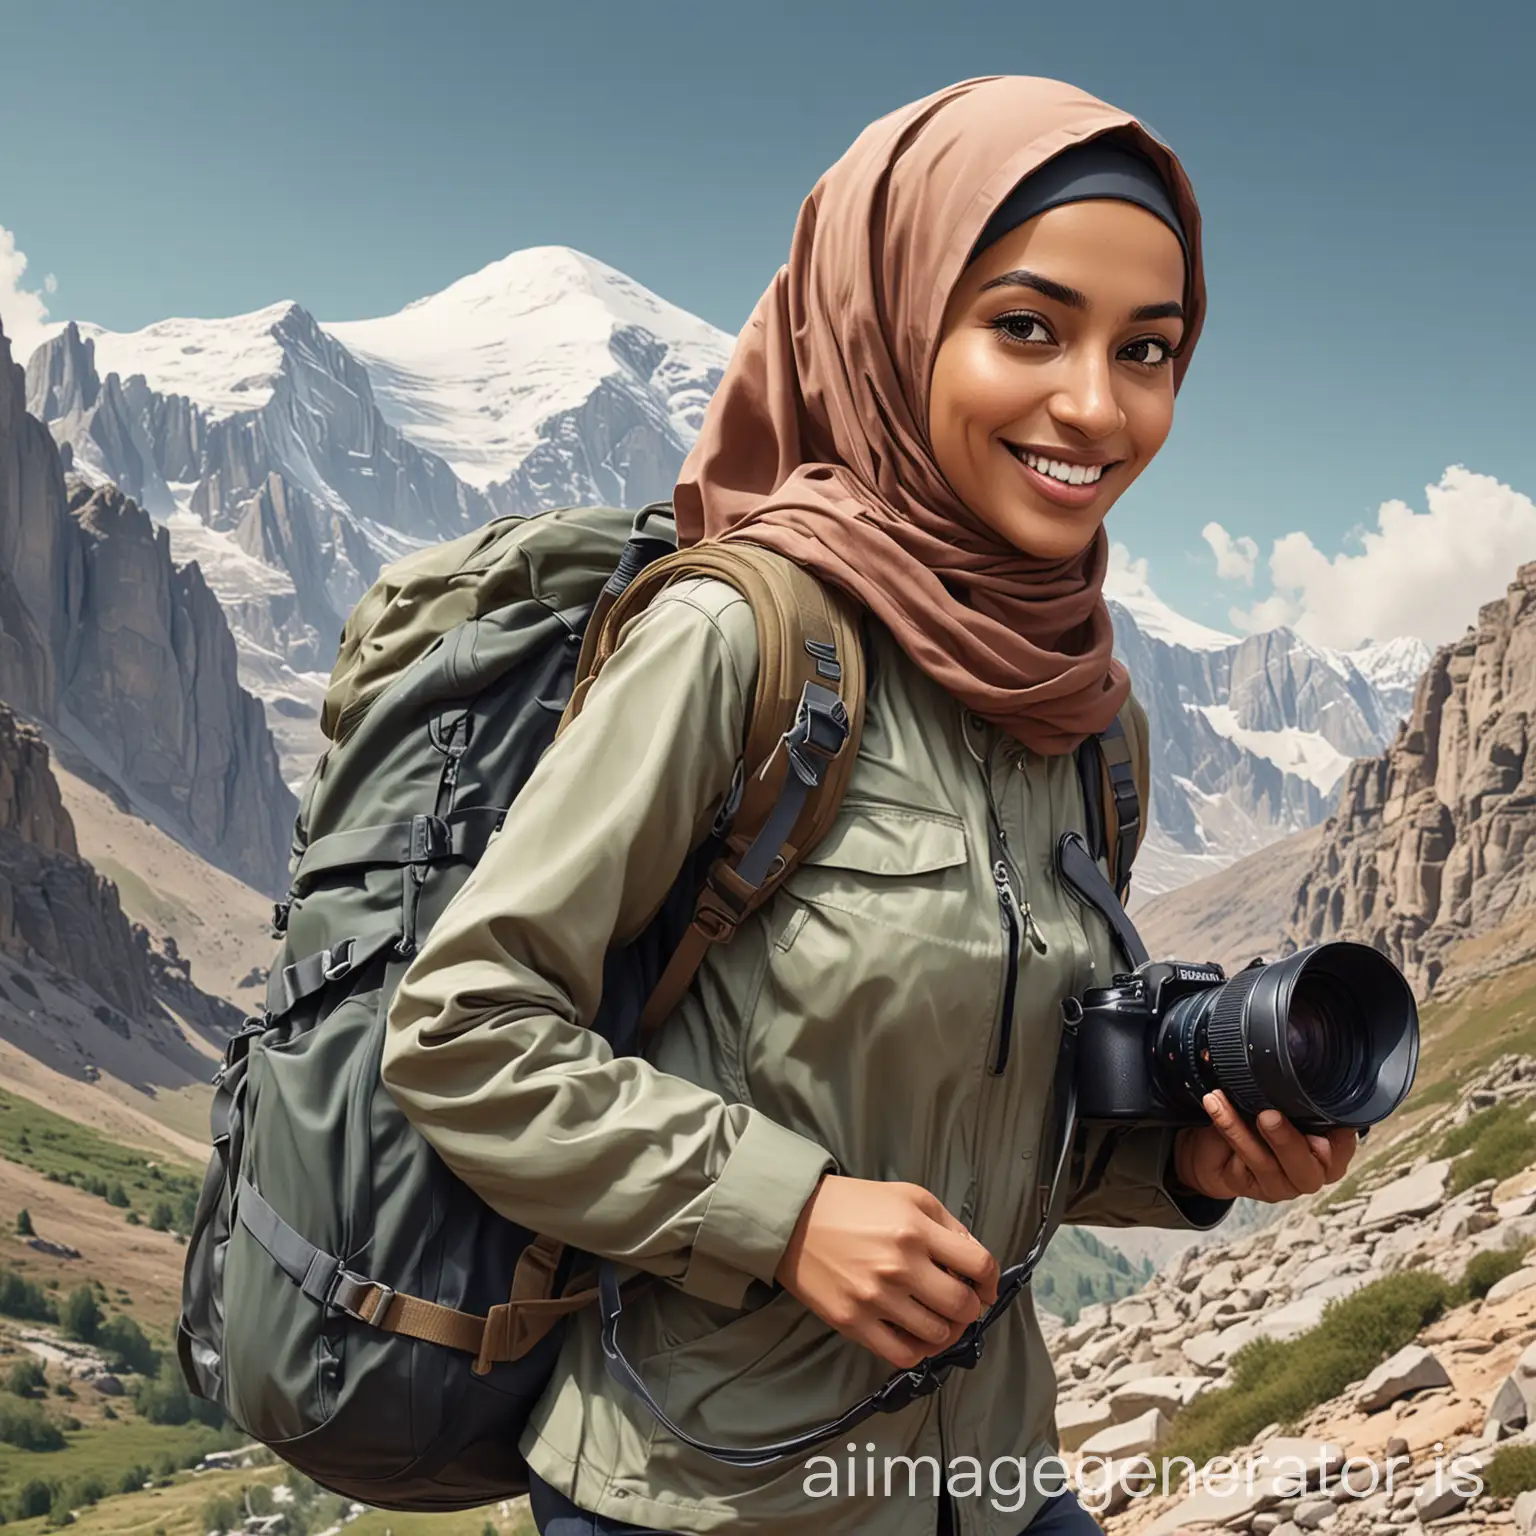 Buatkan saya karikatur ai pendaki wanita muslimah membawa tas gunung dan kamera